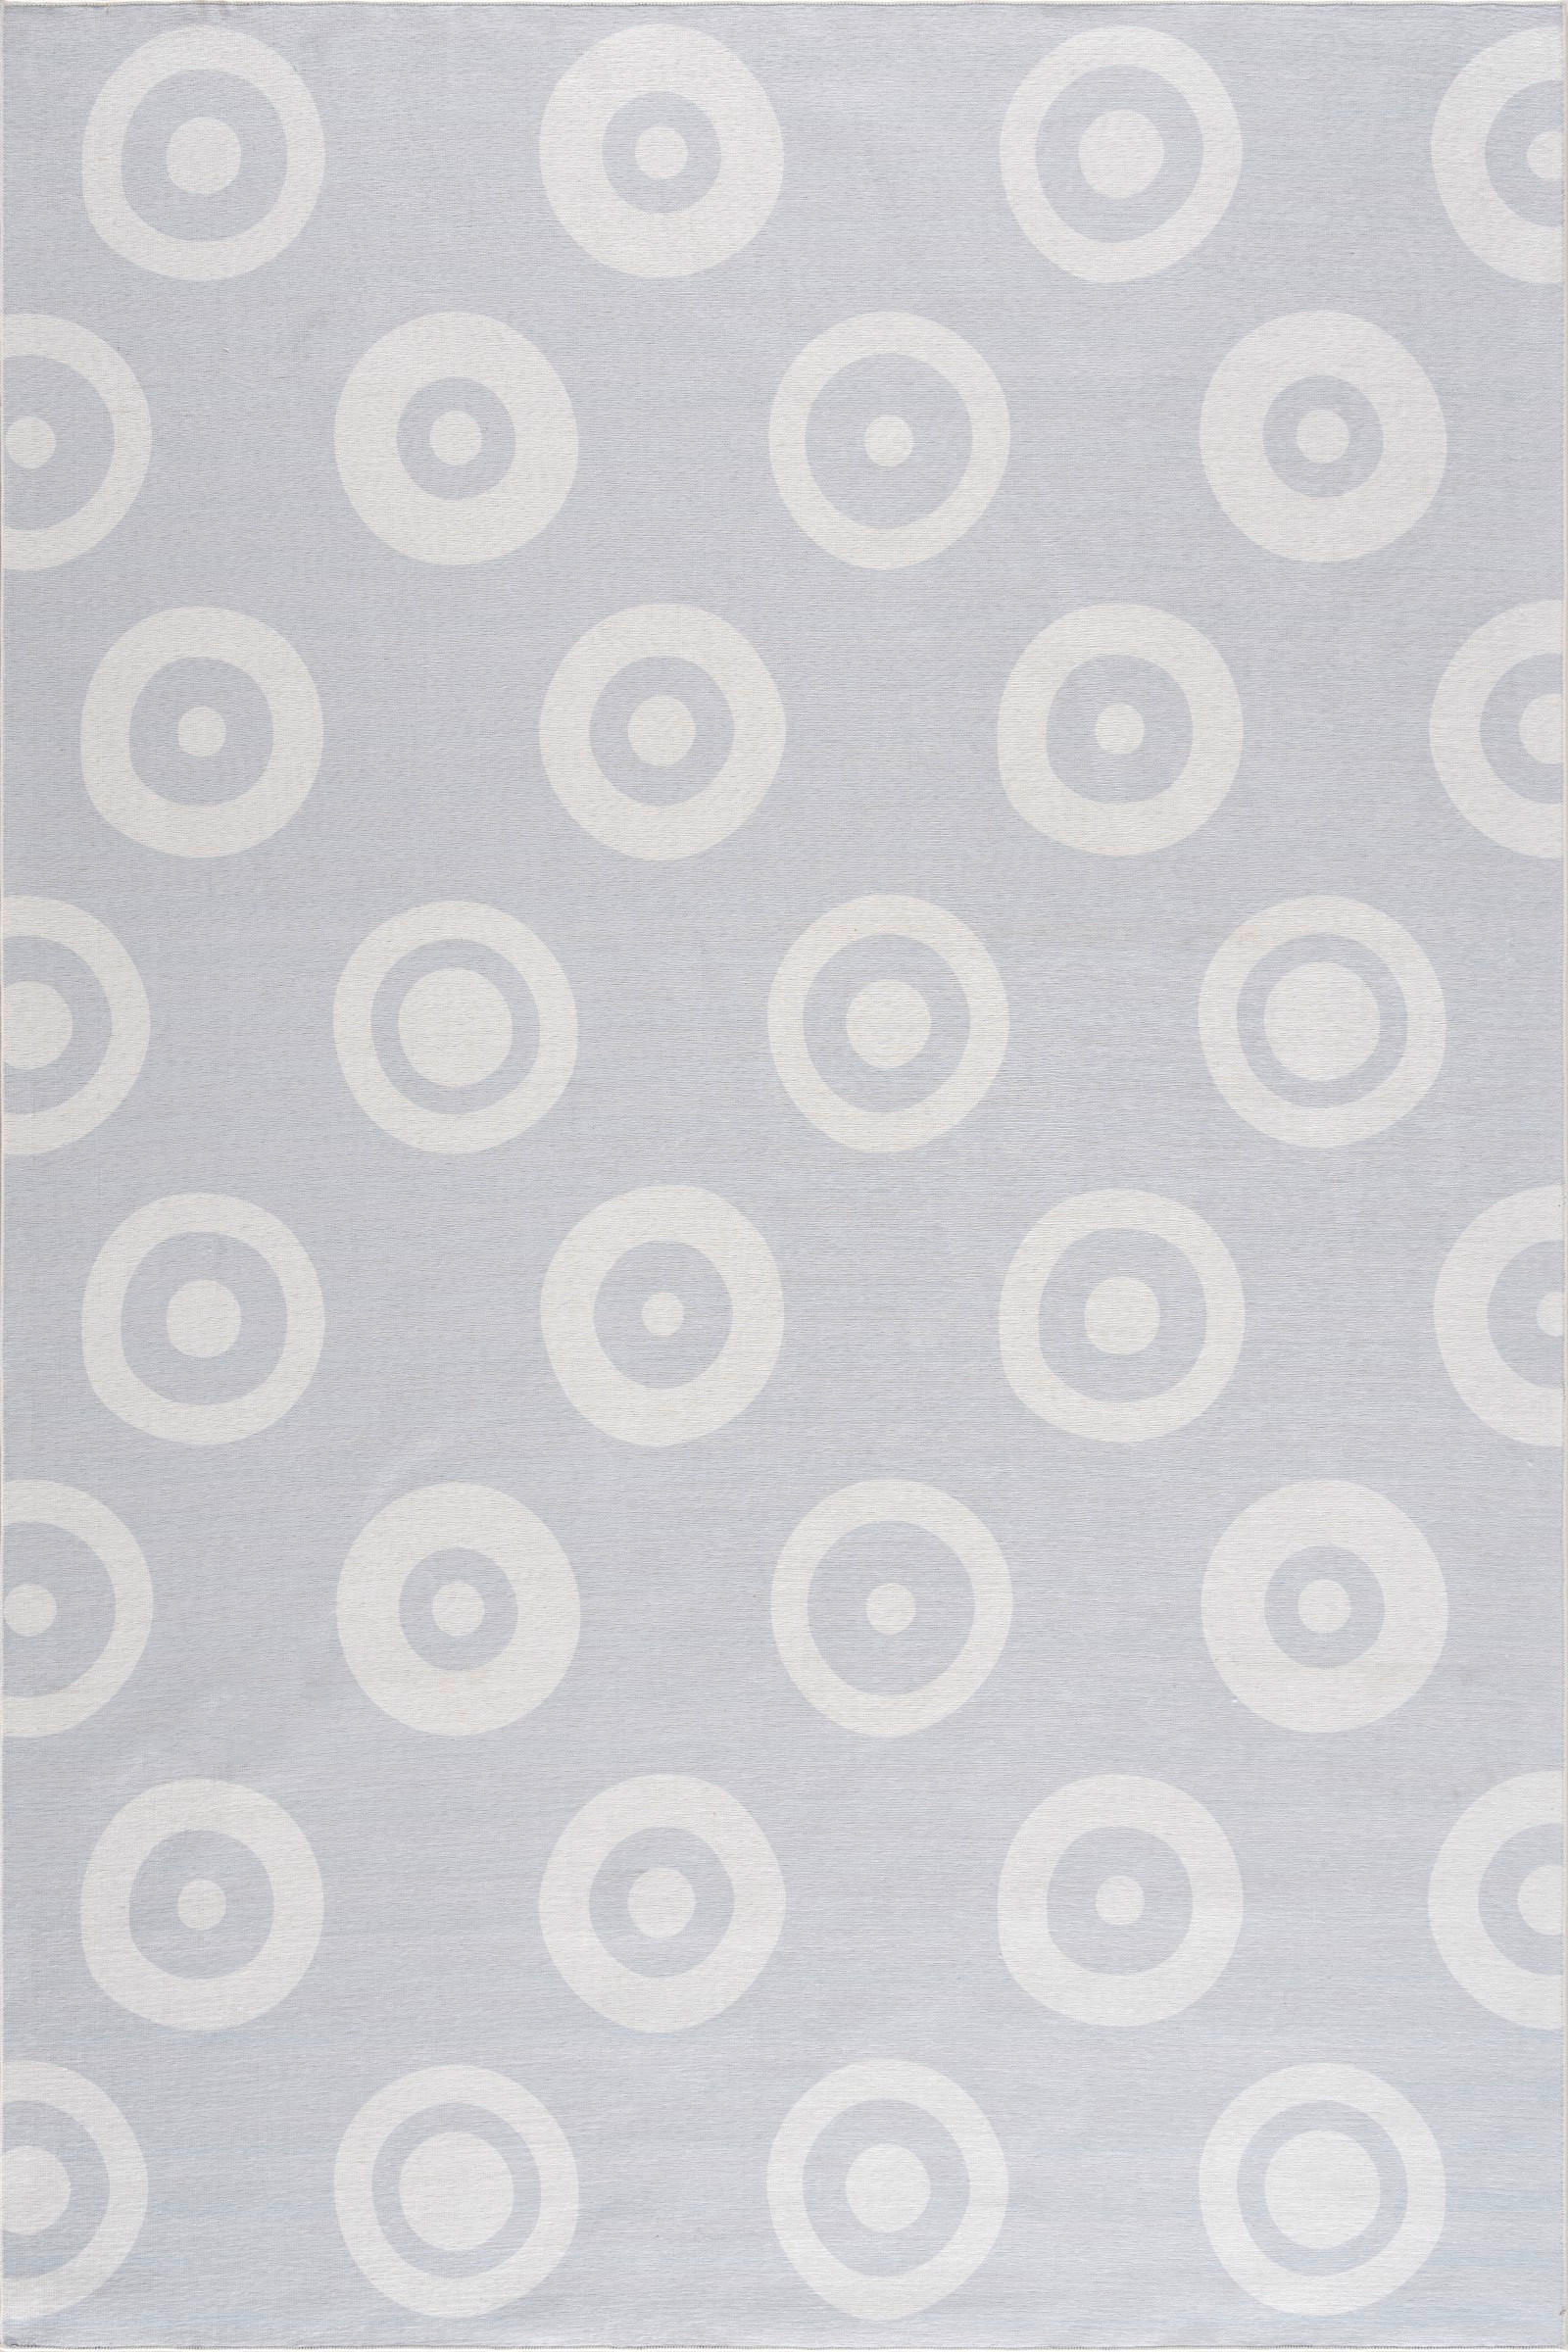 KINDERTEPPICH Happy Rugs  - Silberfarben, Trend, Textil (90/160cm)